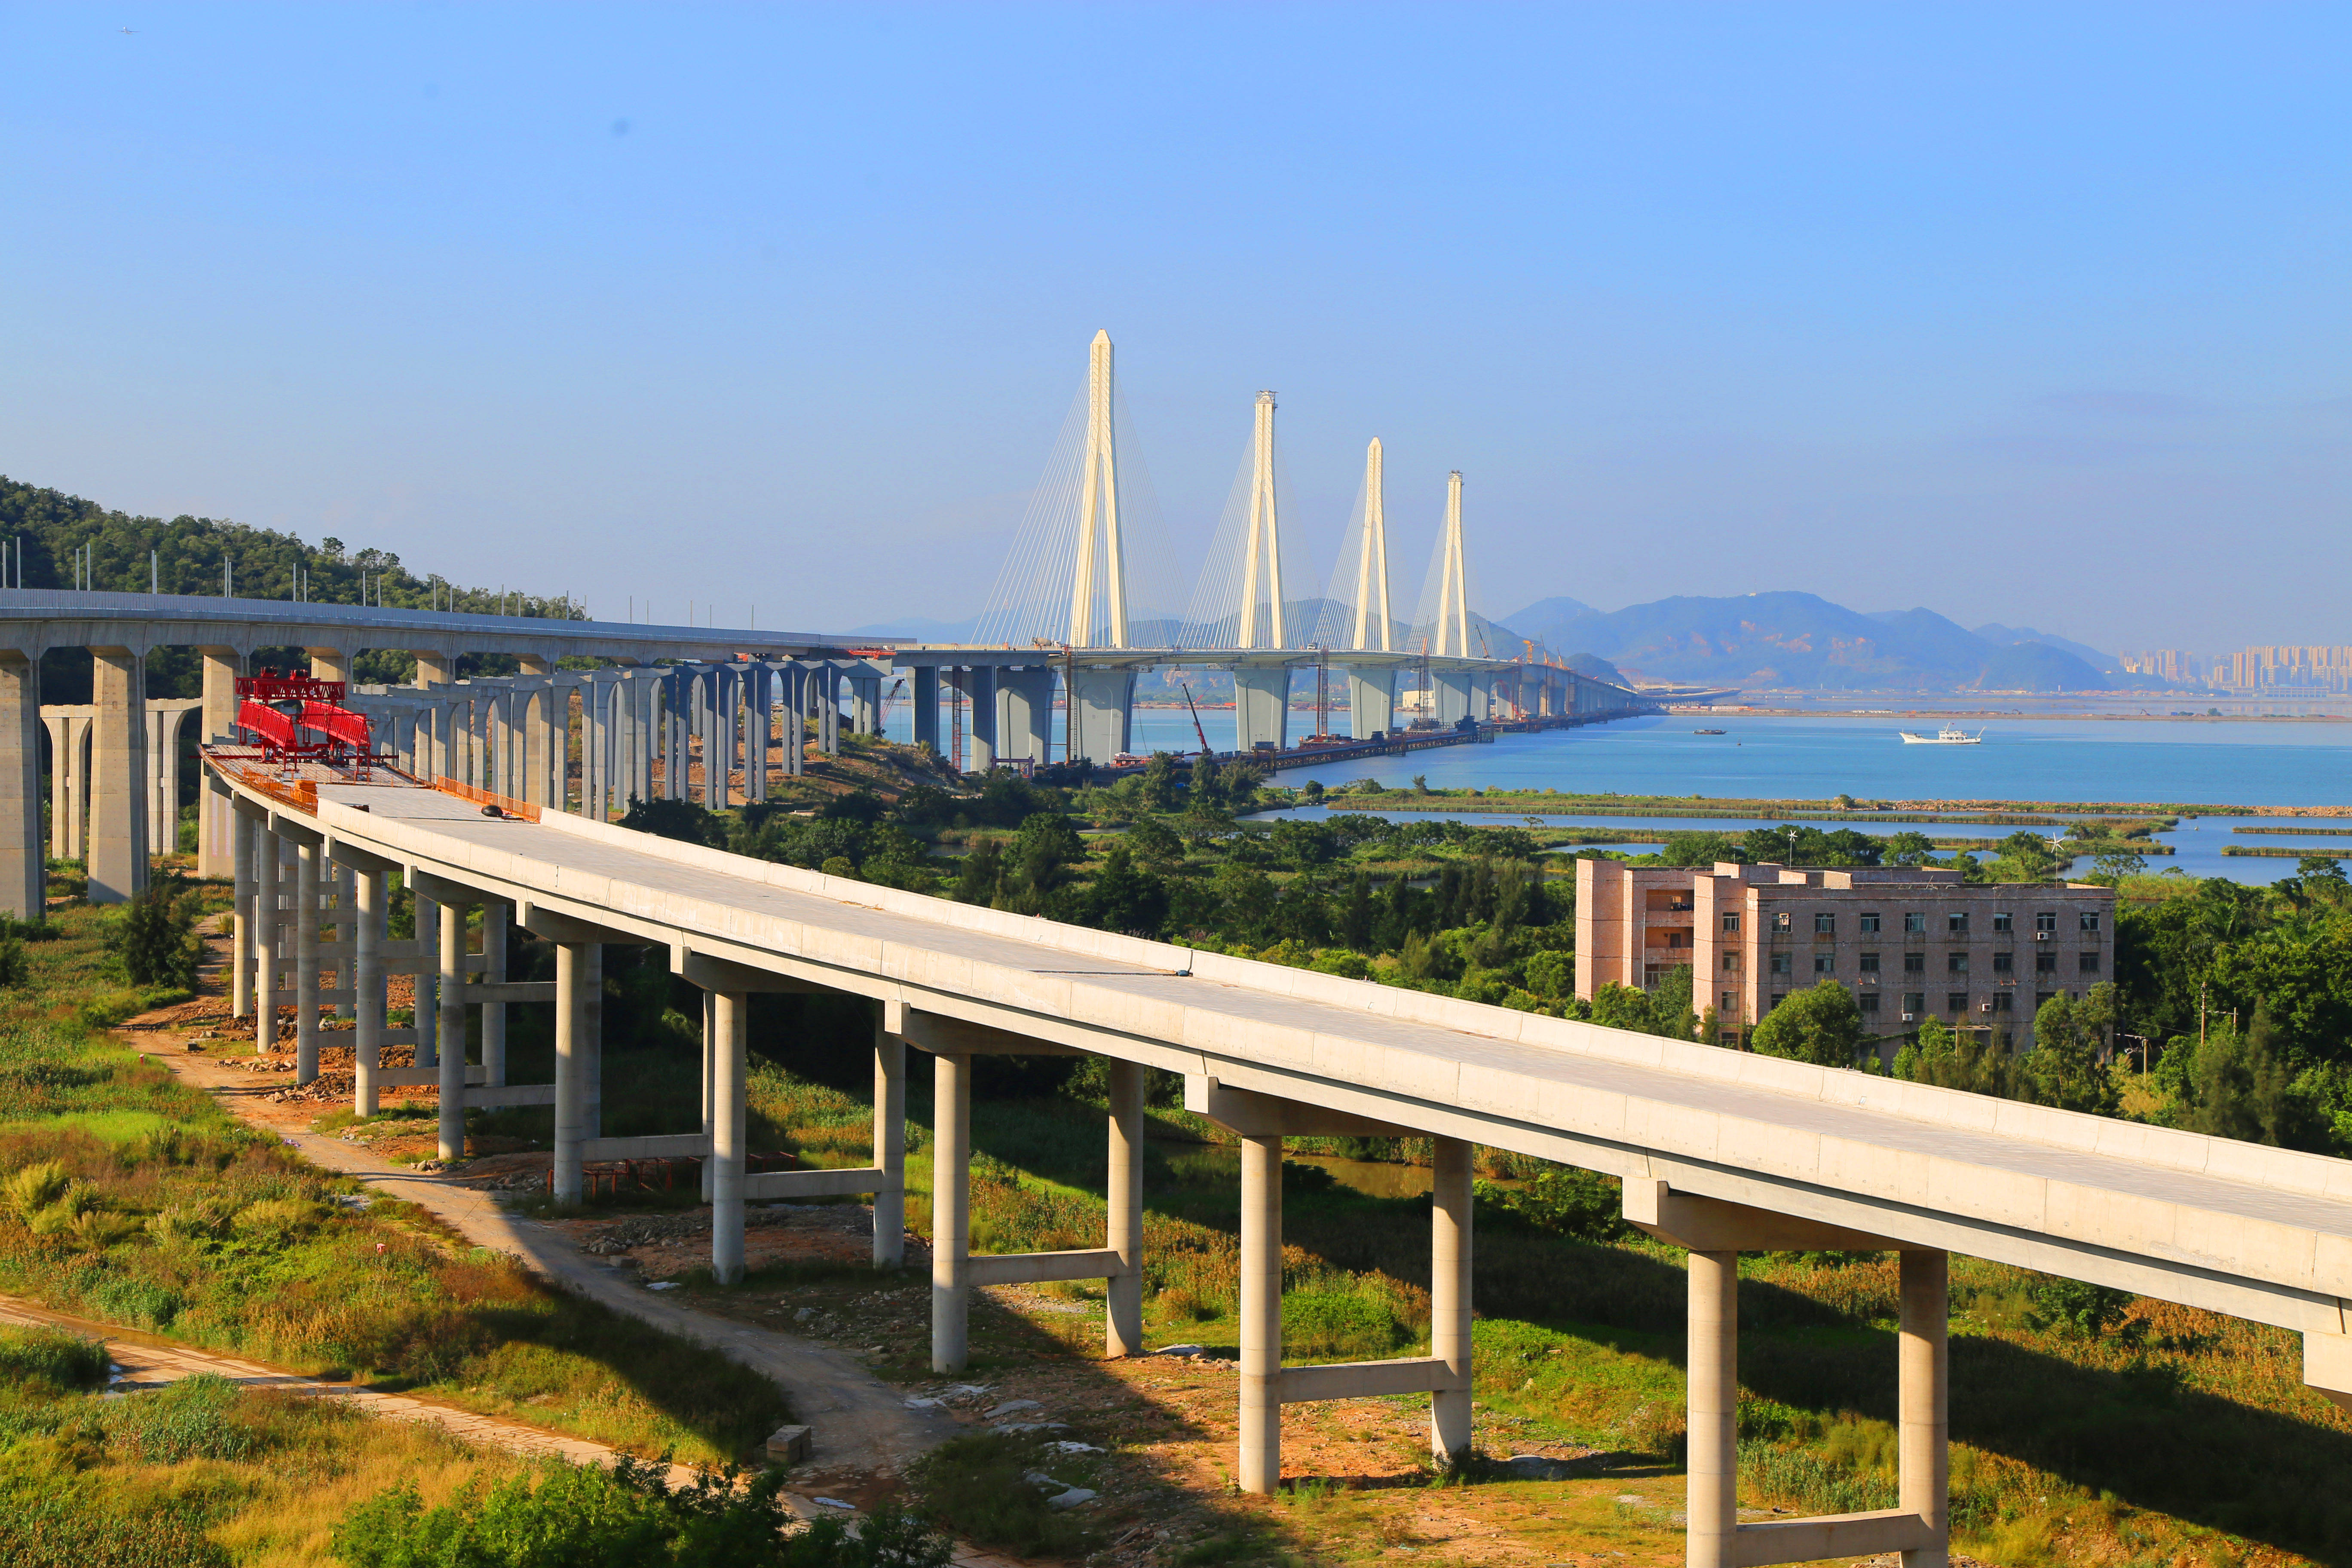 珠海金海大桥突破进展,将为深珠通道提供技术积累